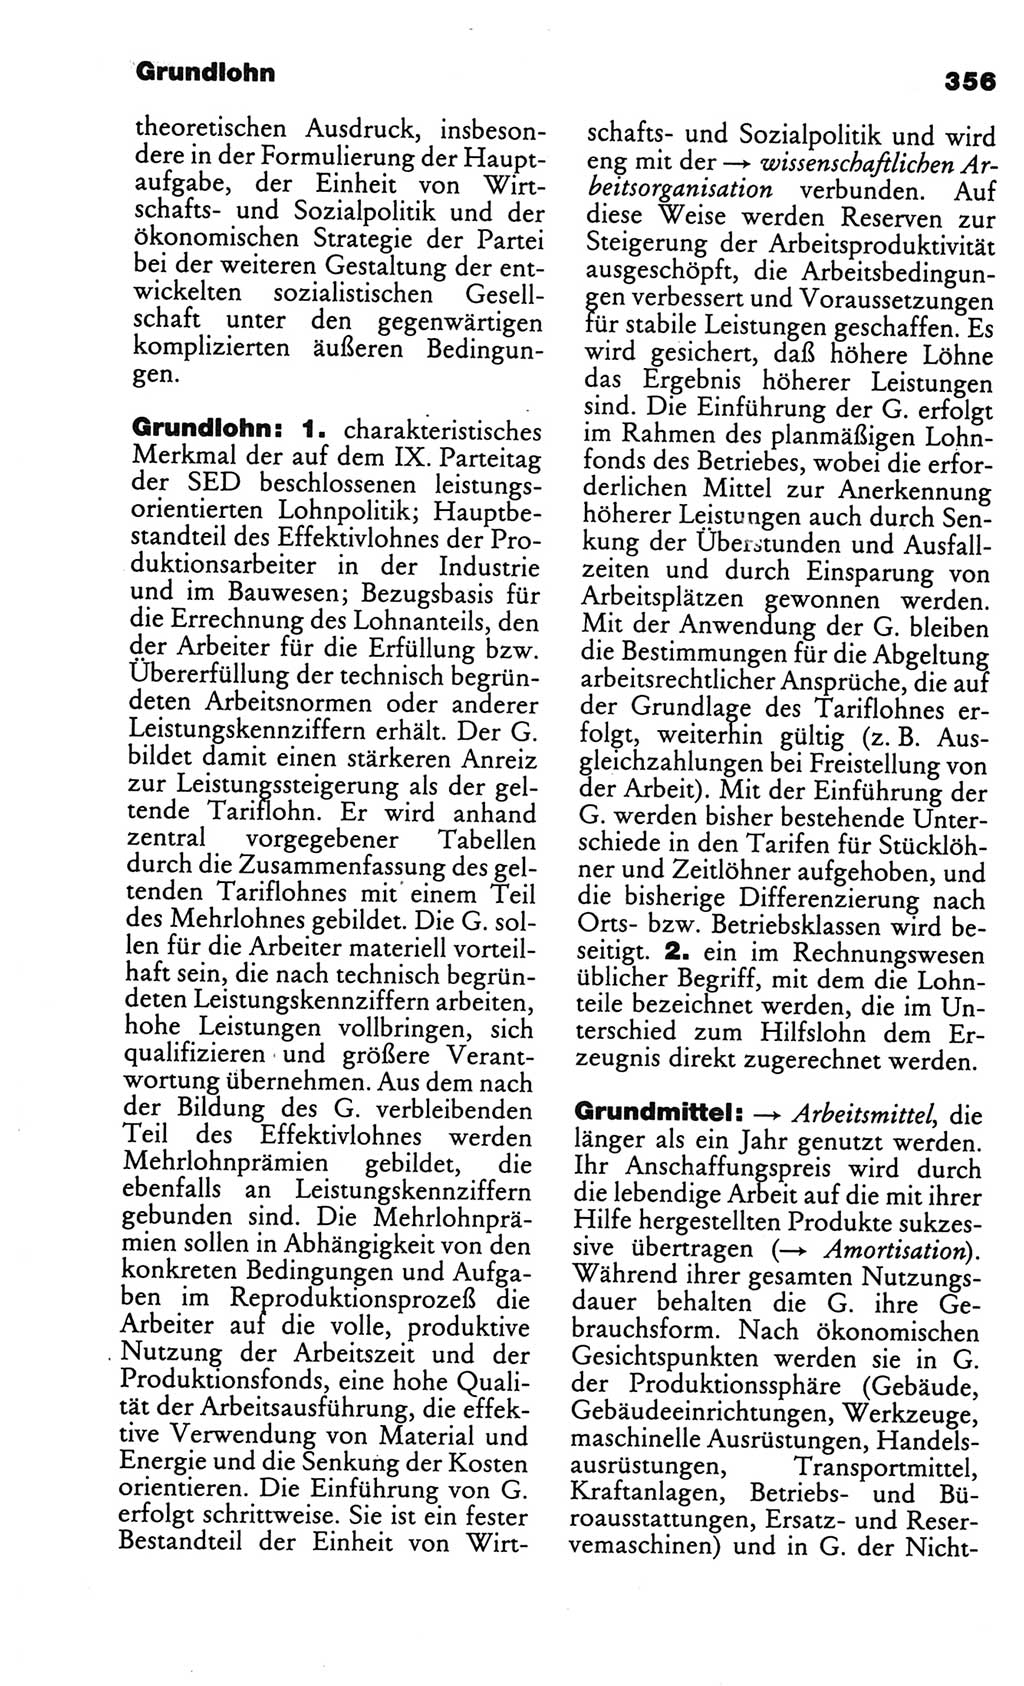 Kleines politisches Wörterbuch [Deutsche Demokratische Republik (DDR)] 1986, Seite 356 (Kl. pol. Wb. DDR 1986, S. 356)